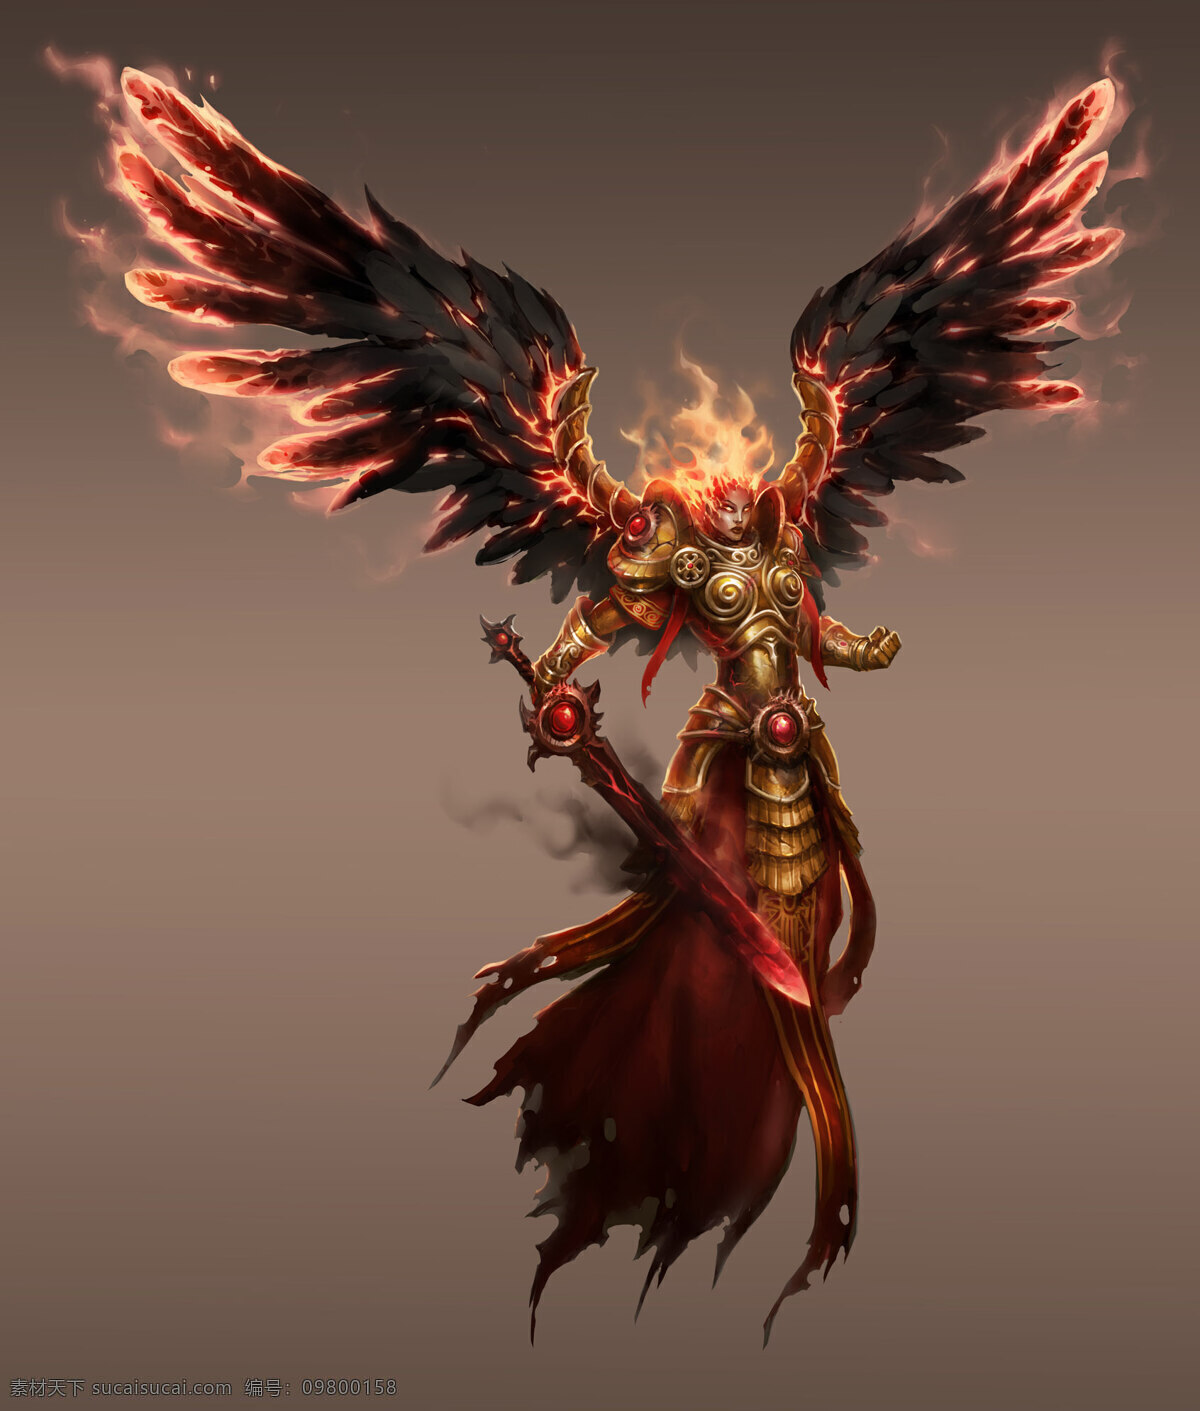 堕 天使 翅膀 动漫动画 动漫人物 剑 设计素材 模板下载 堕天使 铠甲